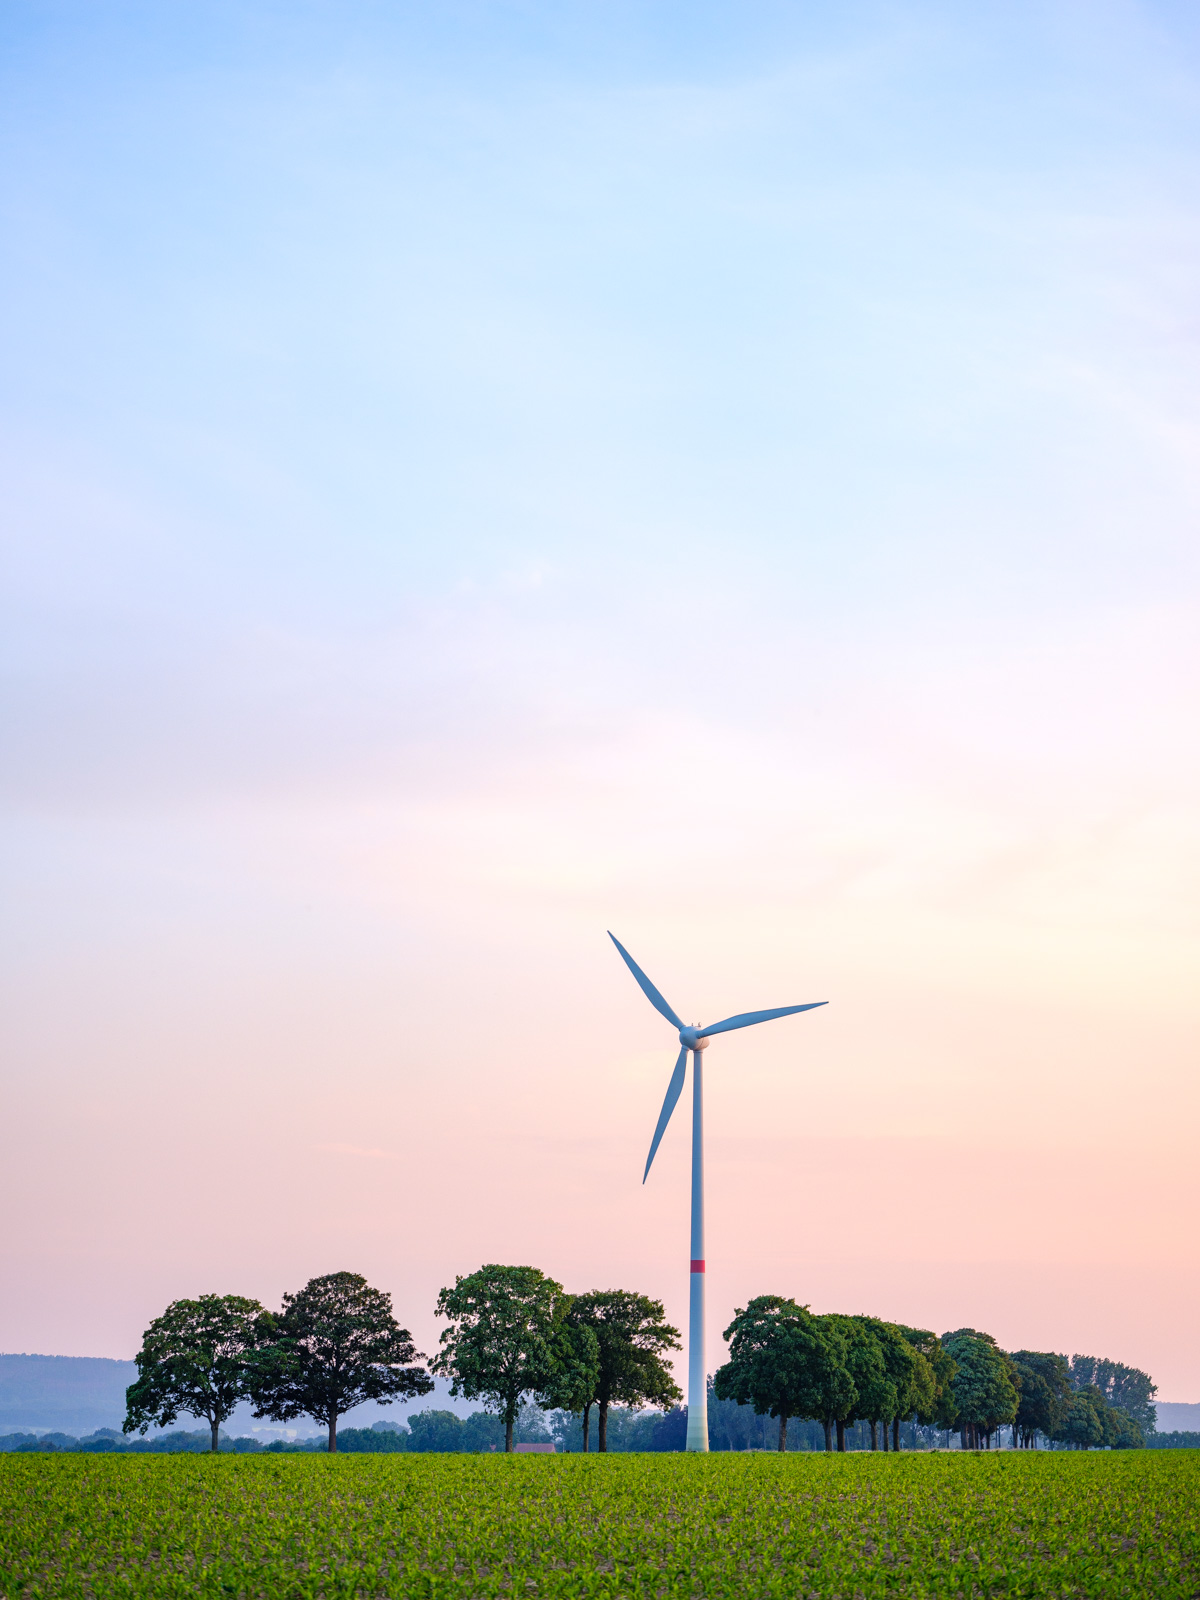 Wind turbine on an evening in June 2020 in 'Jöllenbeck' (Bielefeld, Germany).